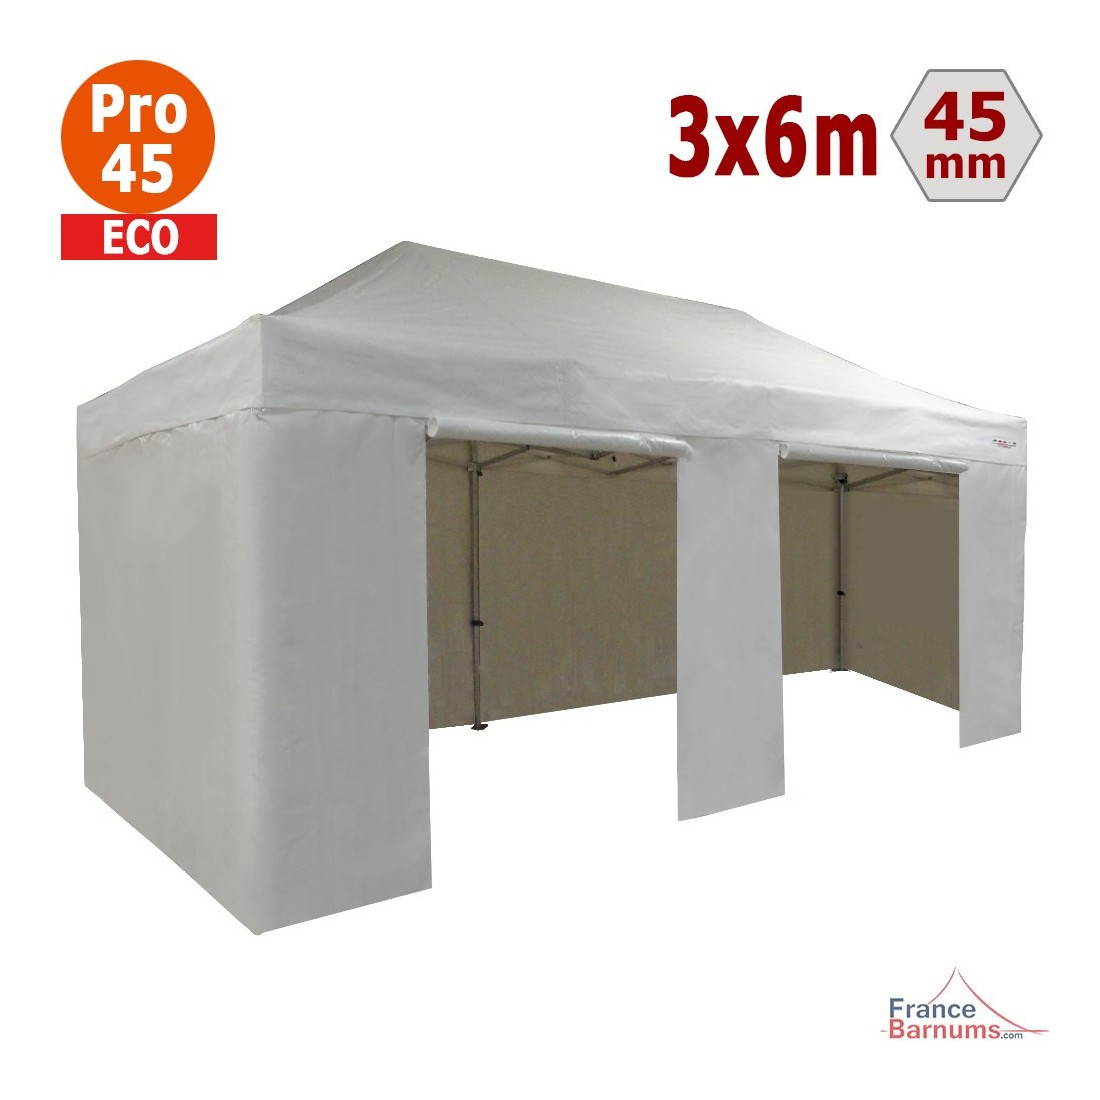 Tente pliante 3x6m Alu Pro 45 ECO (Blanc) avec Côtés - REF 1440